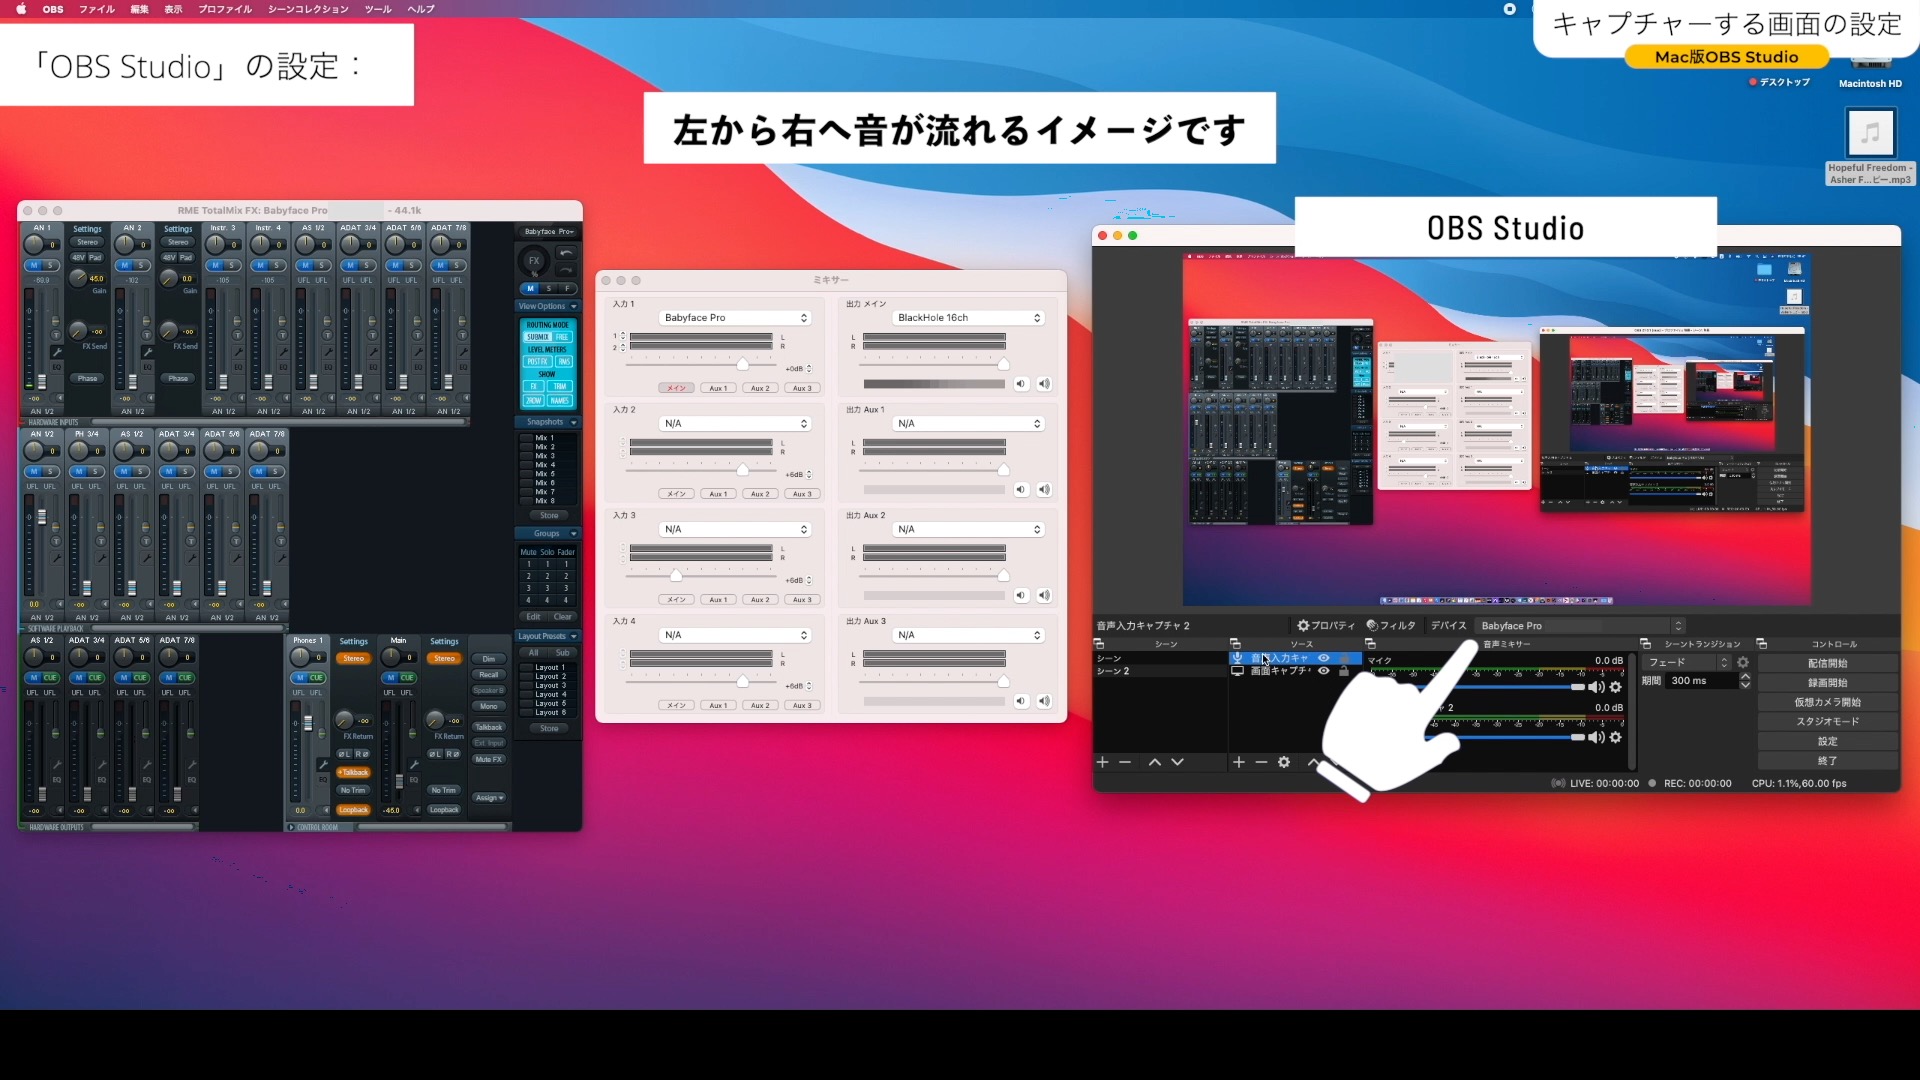 obs studio mac 10.12